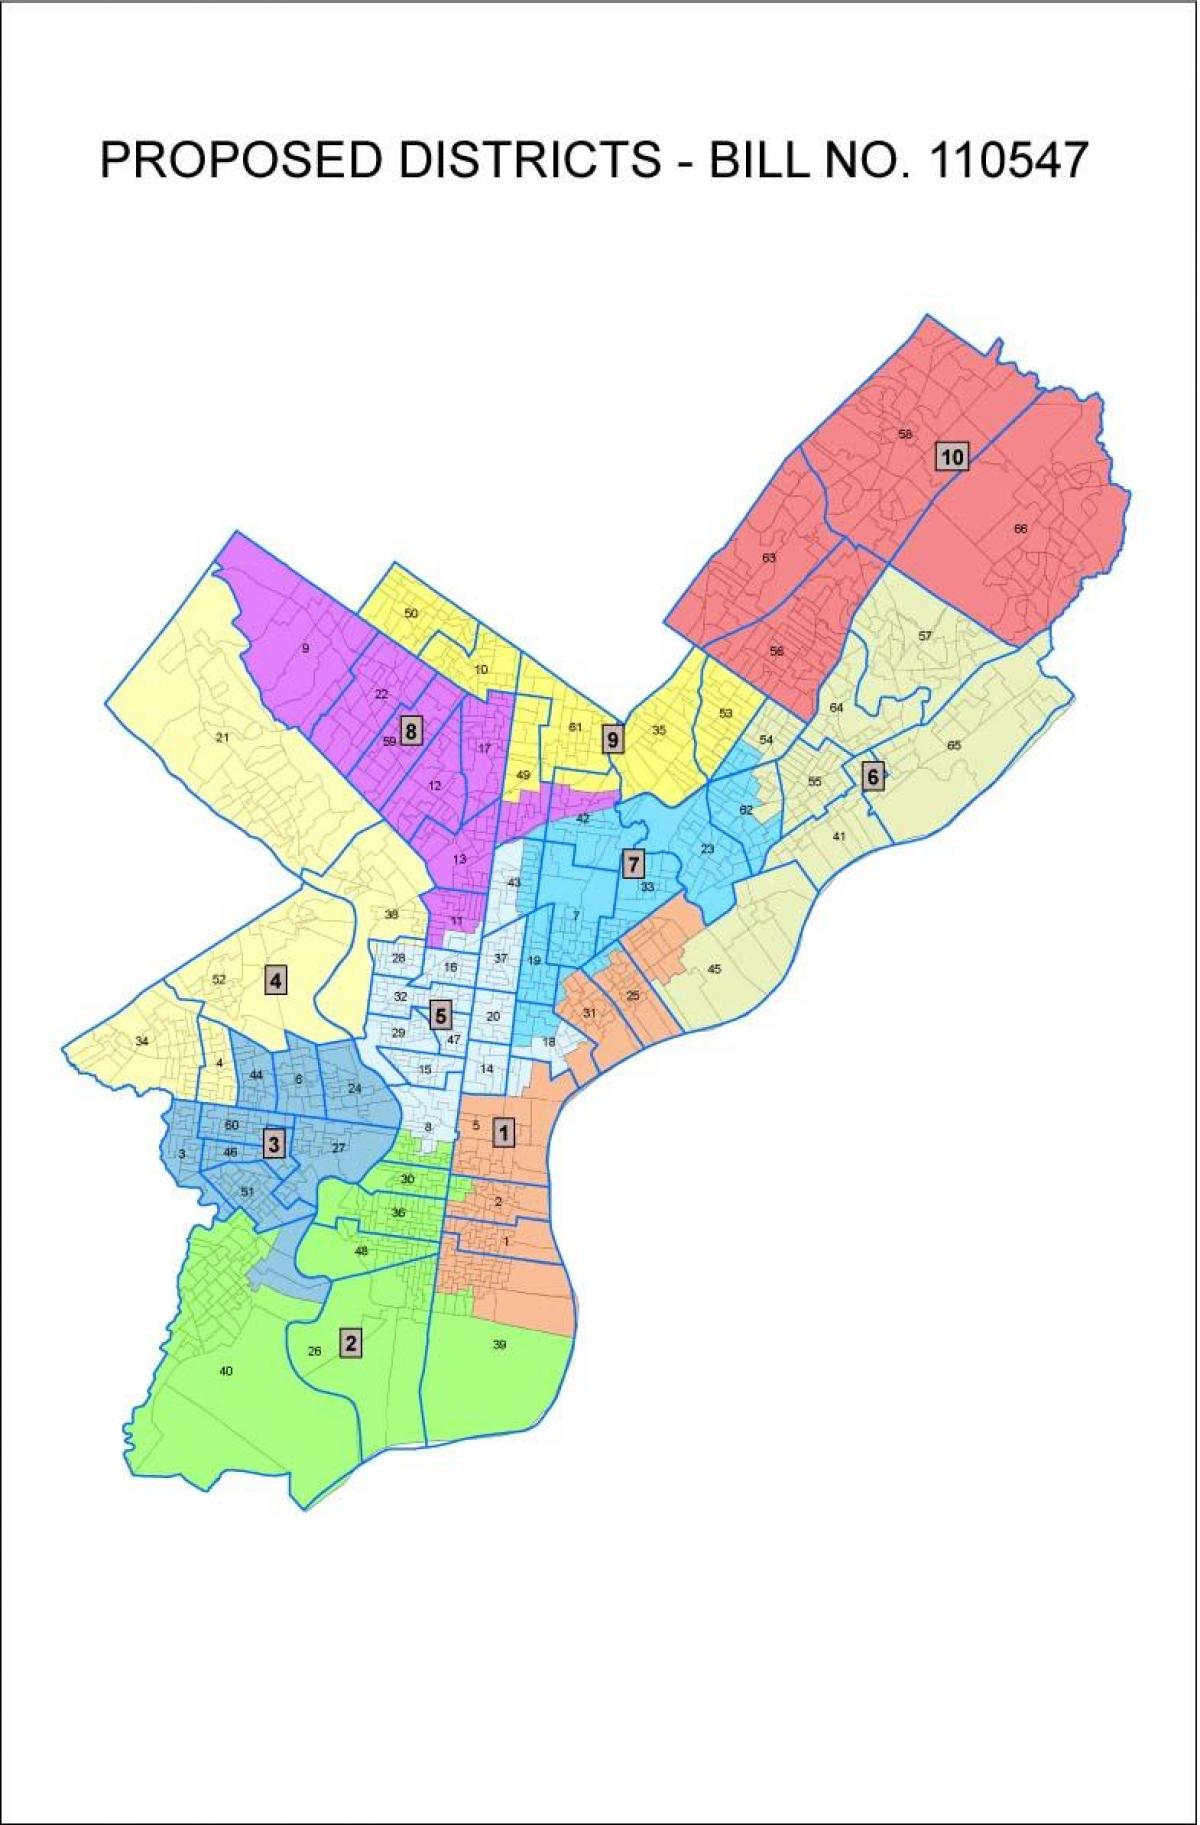 kort over Philly området